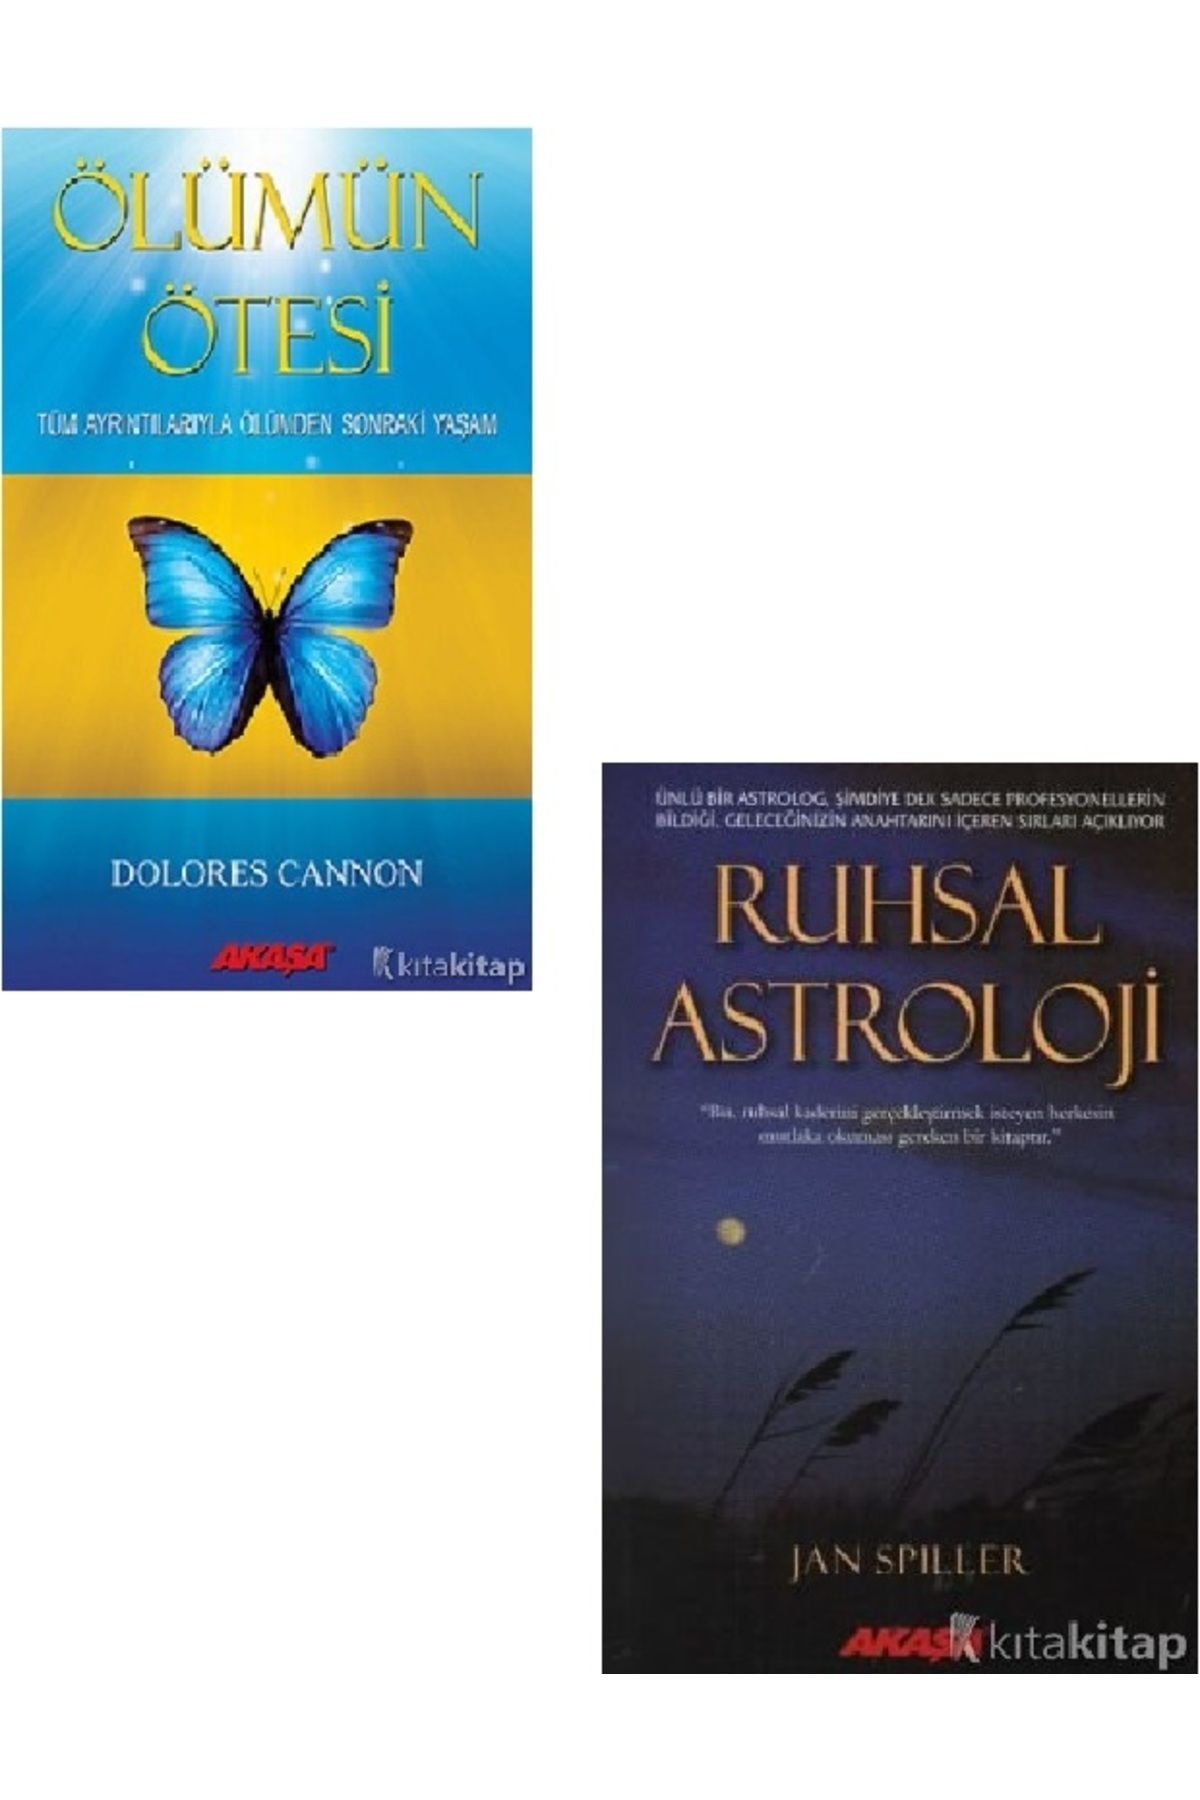 Kronik Kitap Ölümün Ötesi - Ruhsal Astroloji - Jan Spiller - Dolores Cannon 2 KİTAP SET